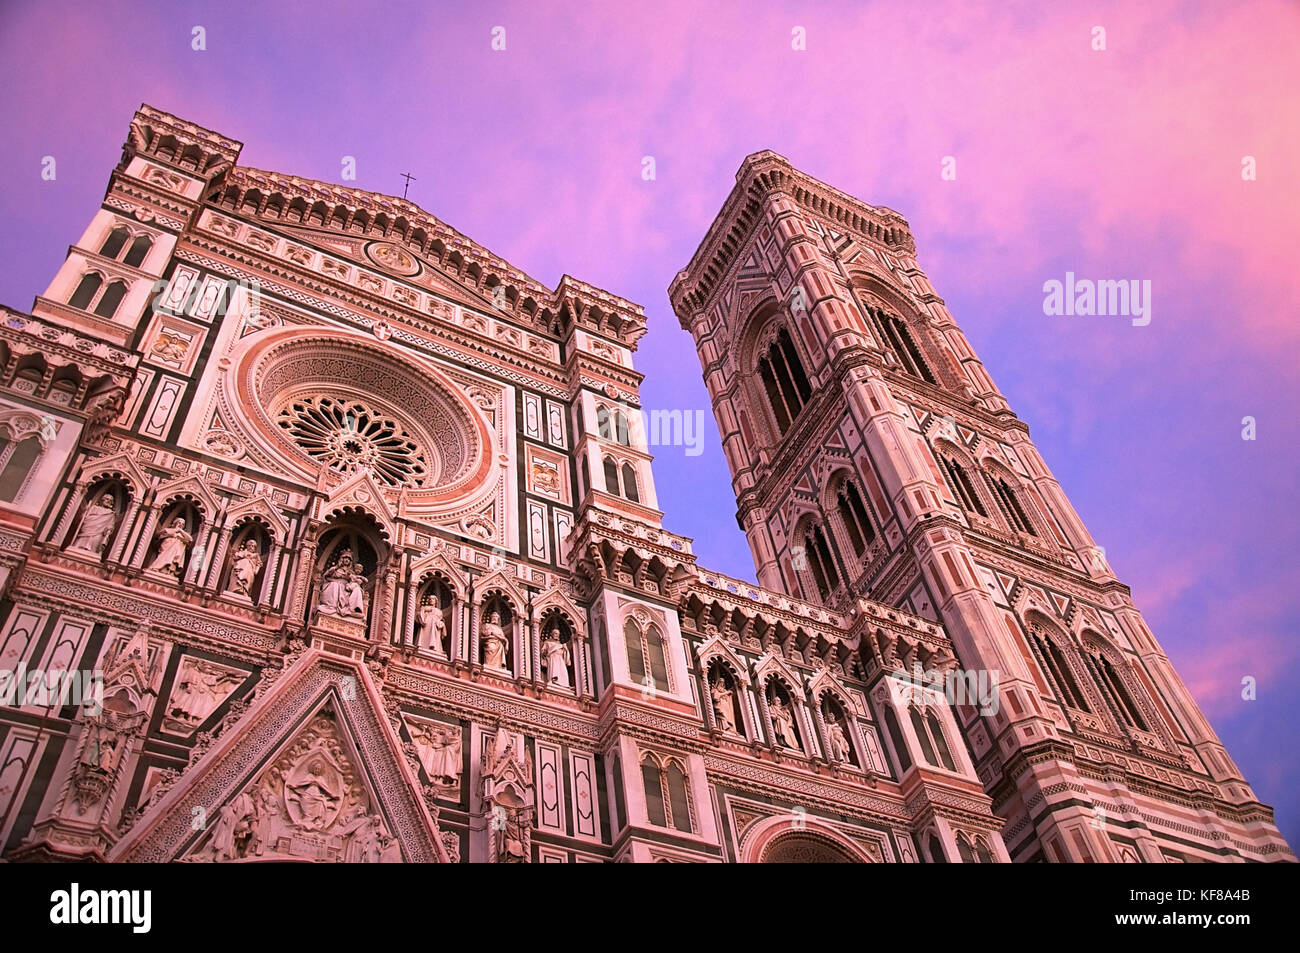 Mirando hacia la parte delantera de la catedral de Santa María al atardecer en Florencia, Italia. Foto de stock